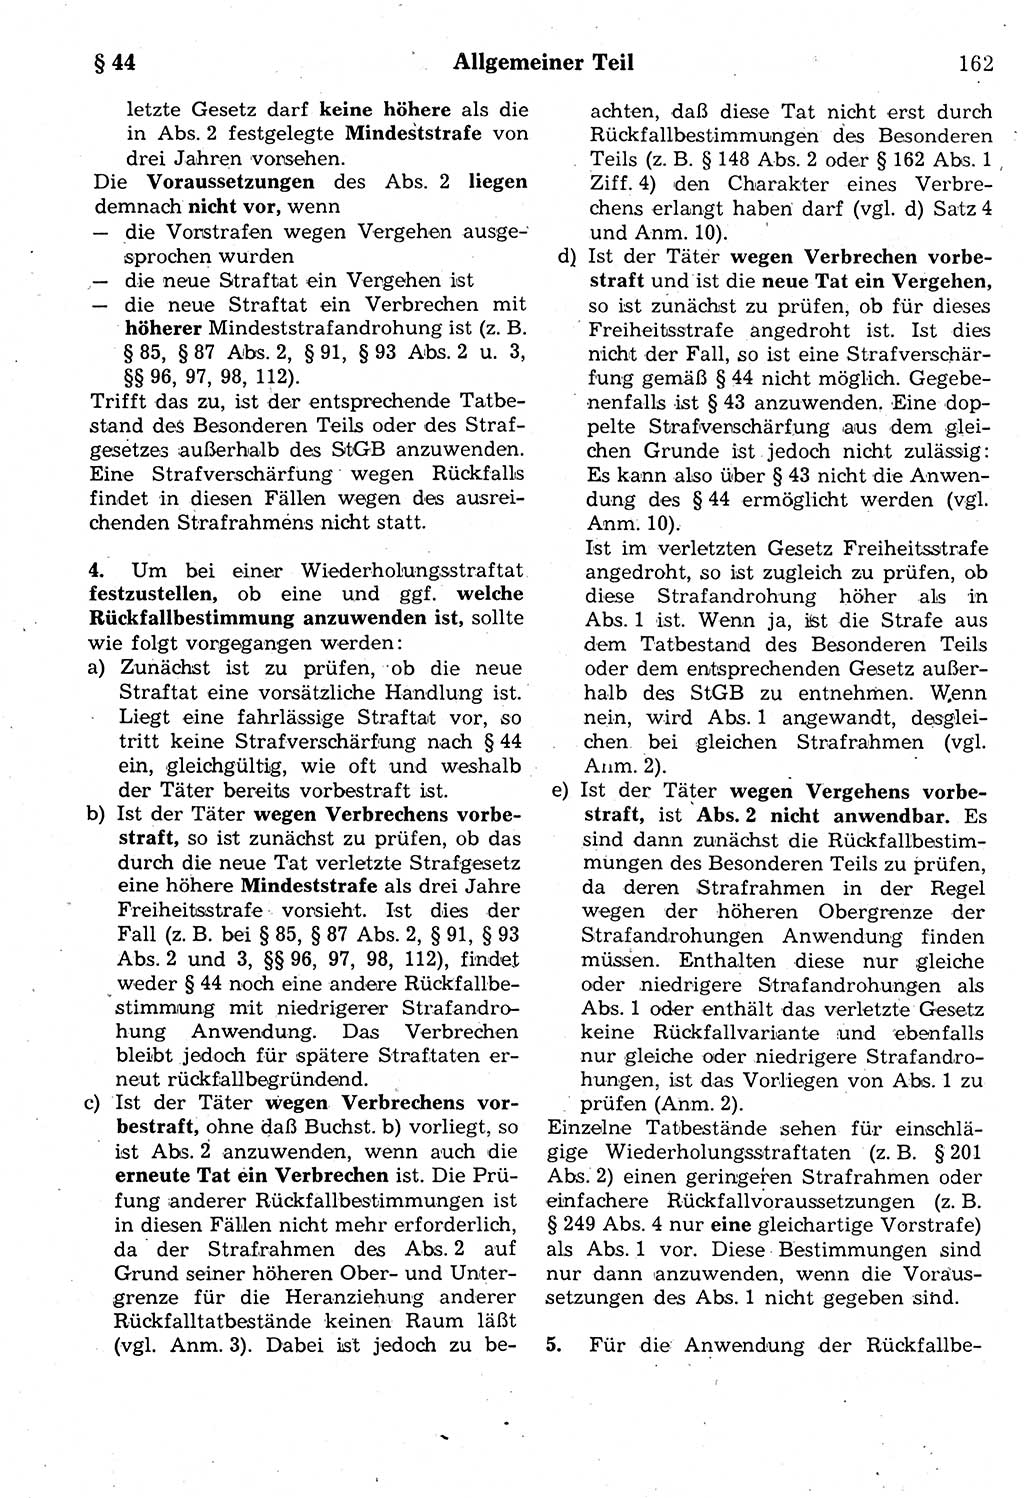 Strafrecht der Deutschen Demokratischen Republik (DDR), Kommentar zum Strafgesetzbuch (StGB) 1987, Seite 162 (Strafr. DDR Komm. StGB 1987, S. 162)